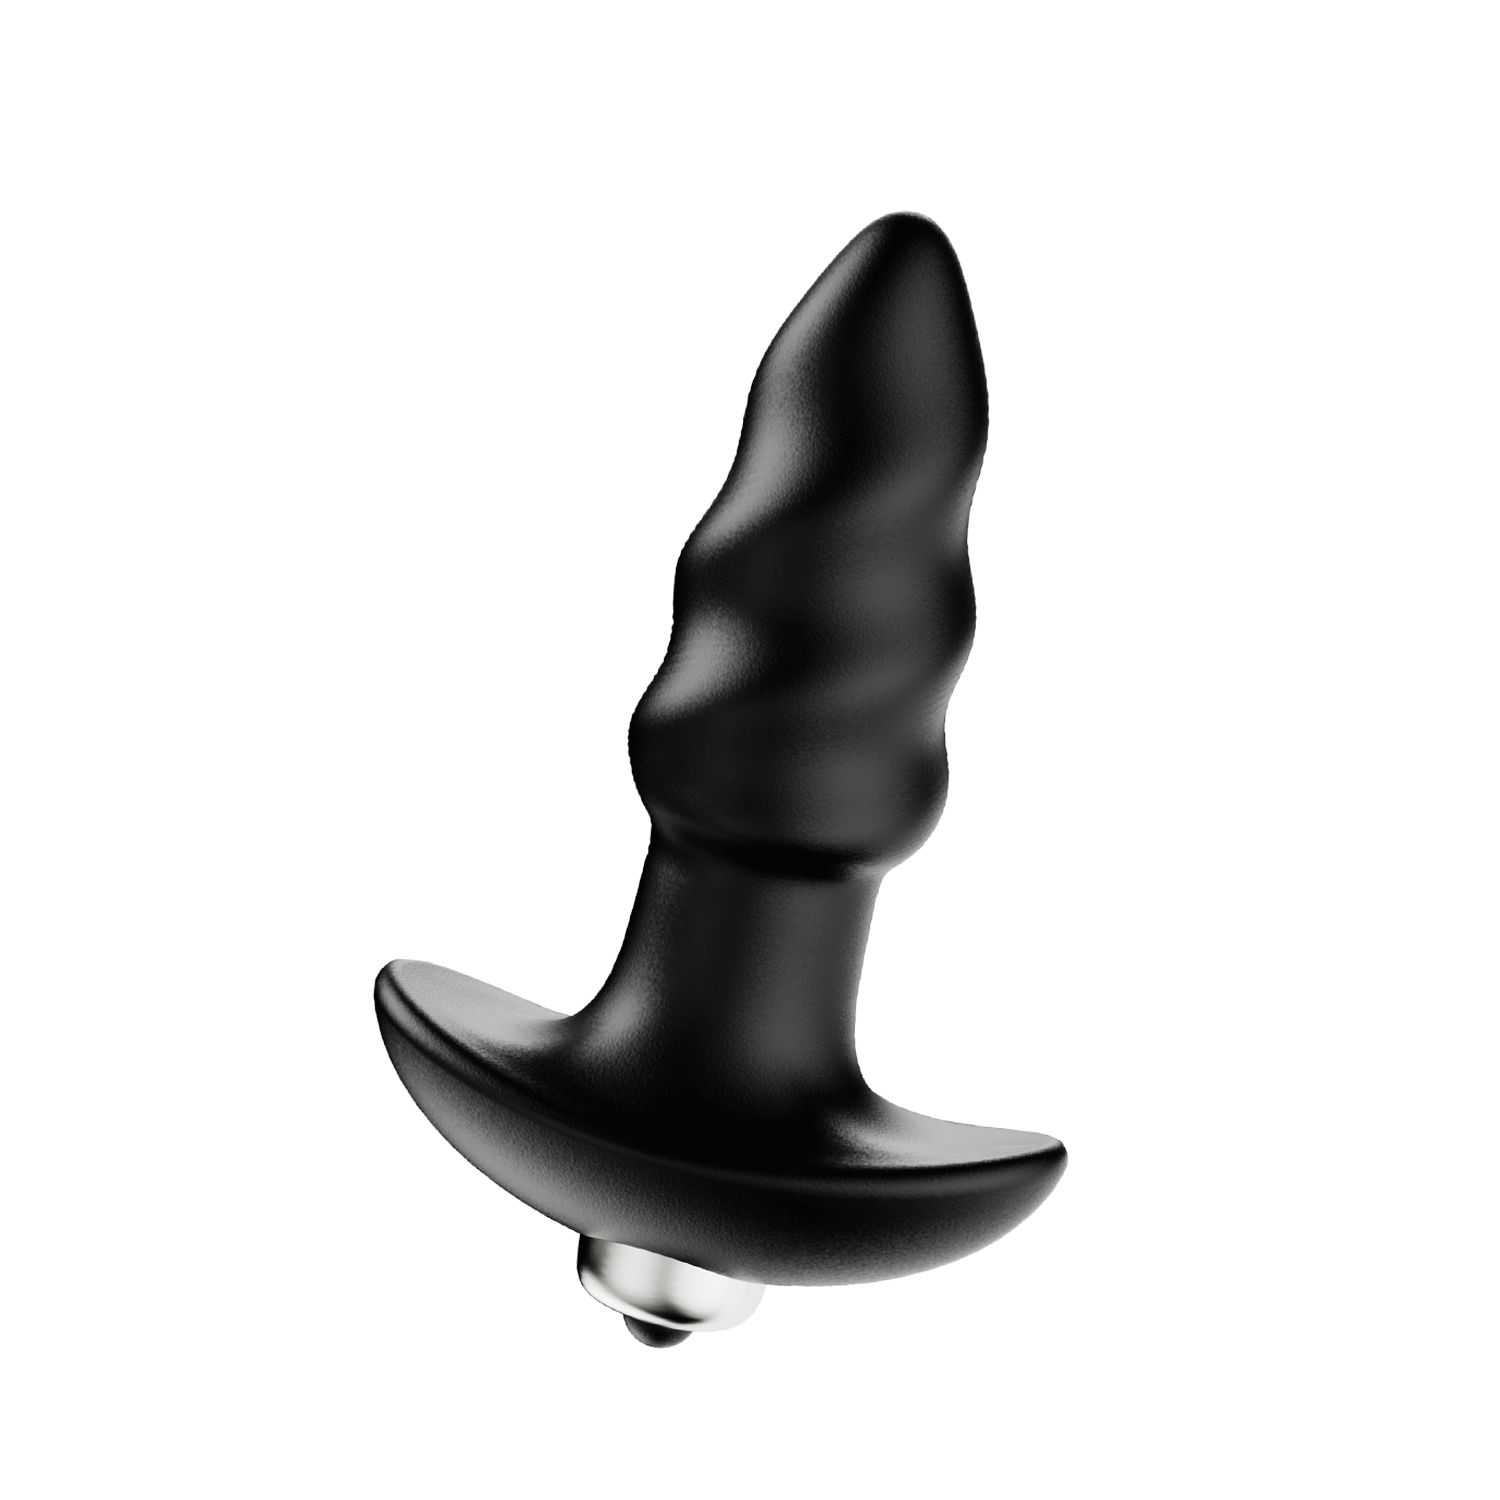 Sacacorchos - Juguete sexual anal Vibrador Butt Plug